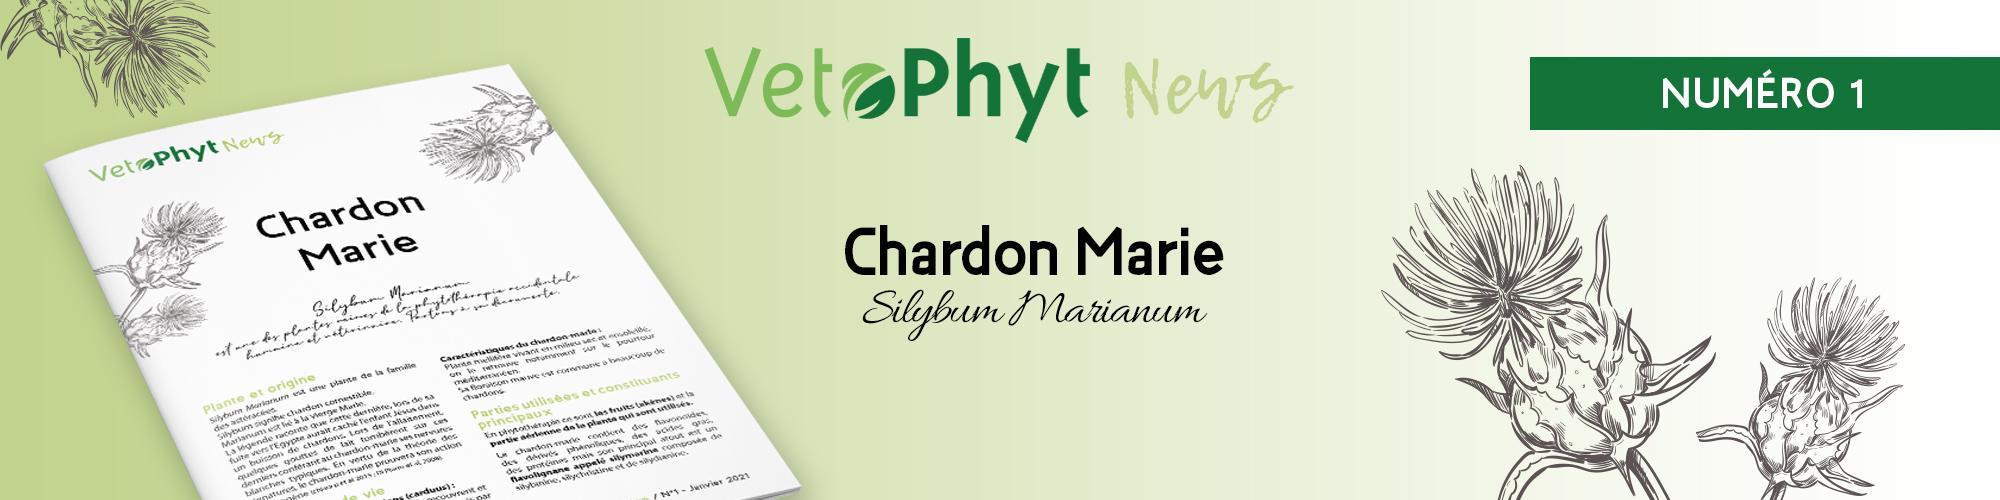 VetoPhyt News Chardon Marie 